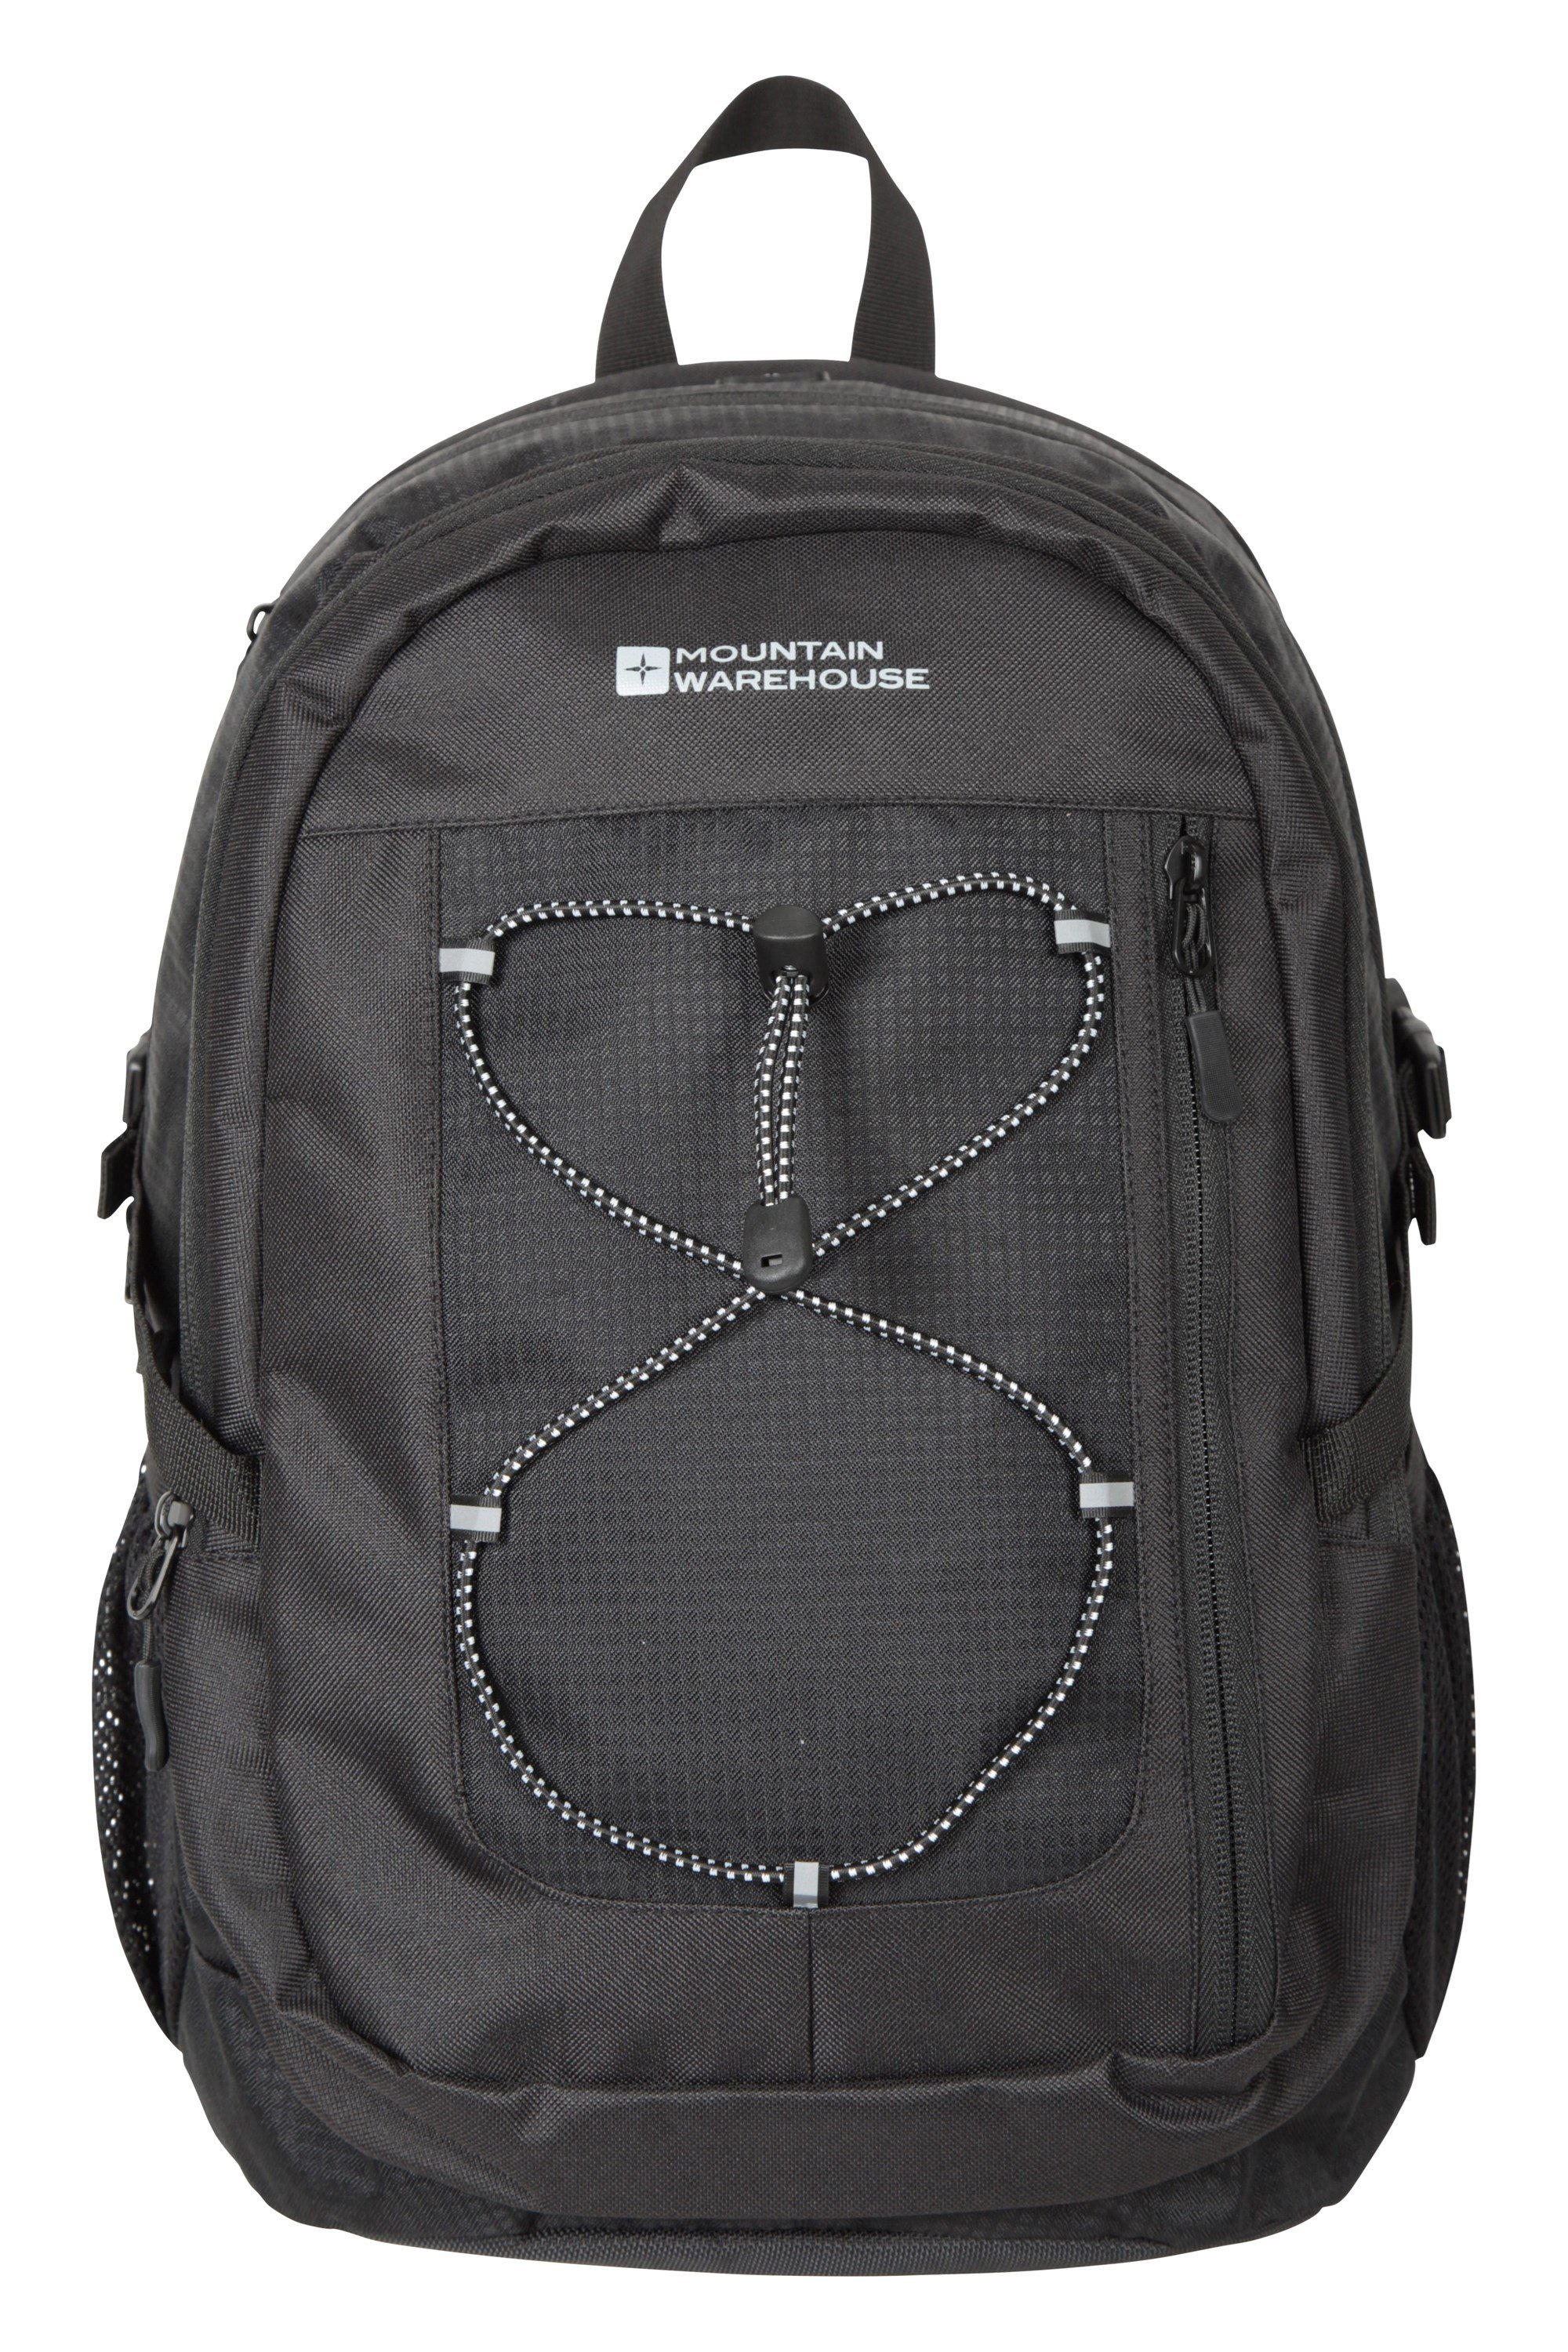 Buy Backpack Online | Best Backpacks Bags Online in India | Linoperros-gemektower.com.vn